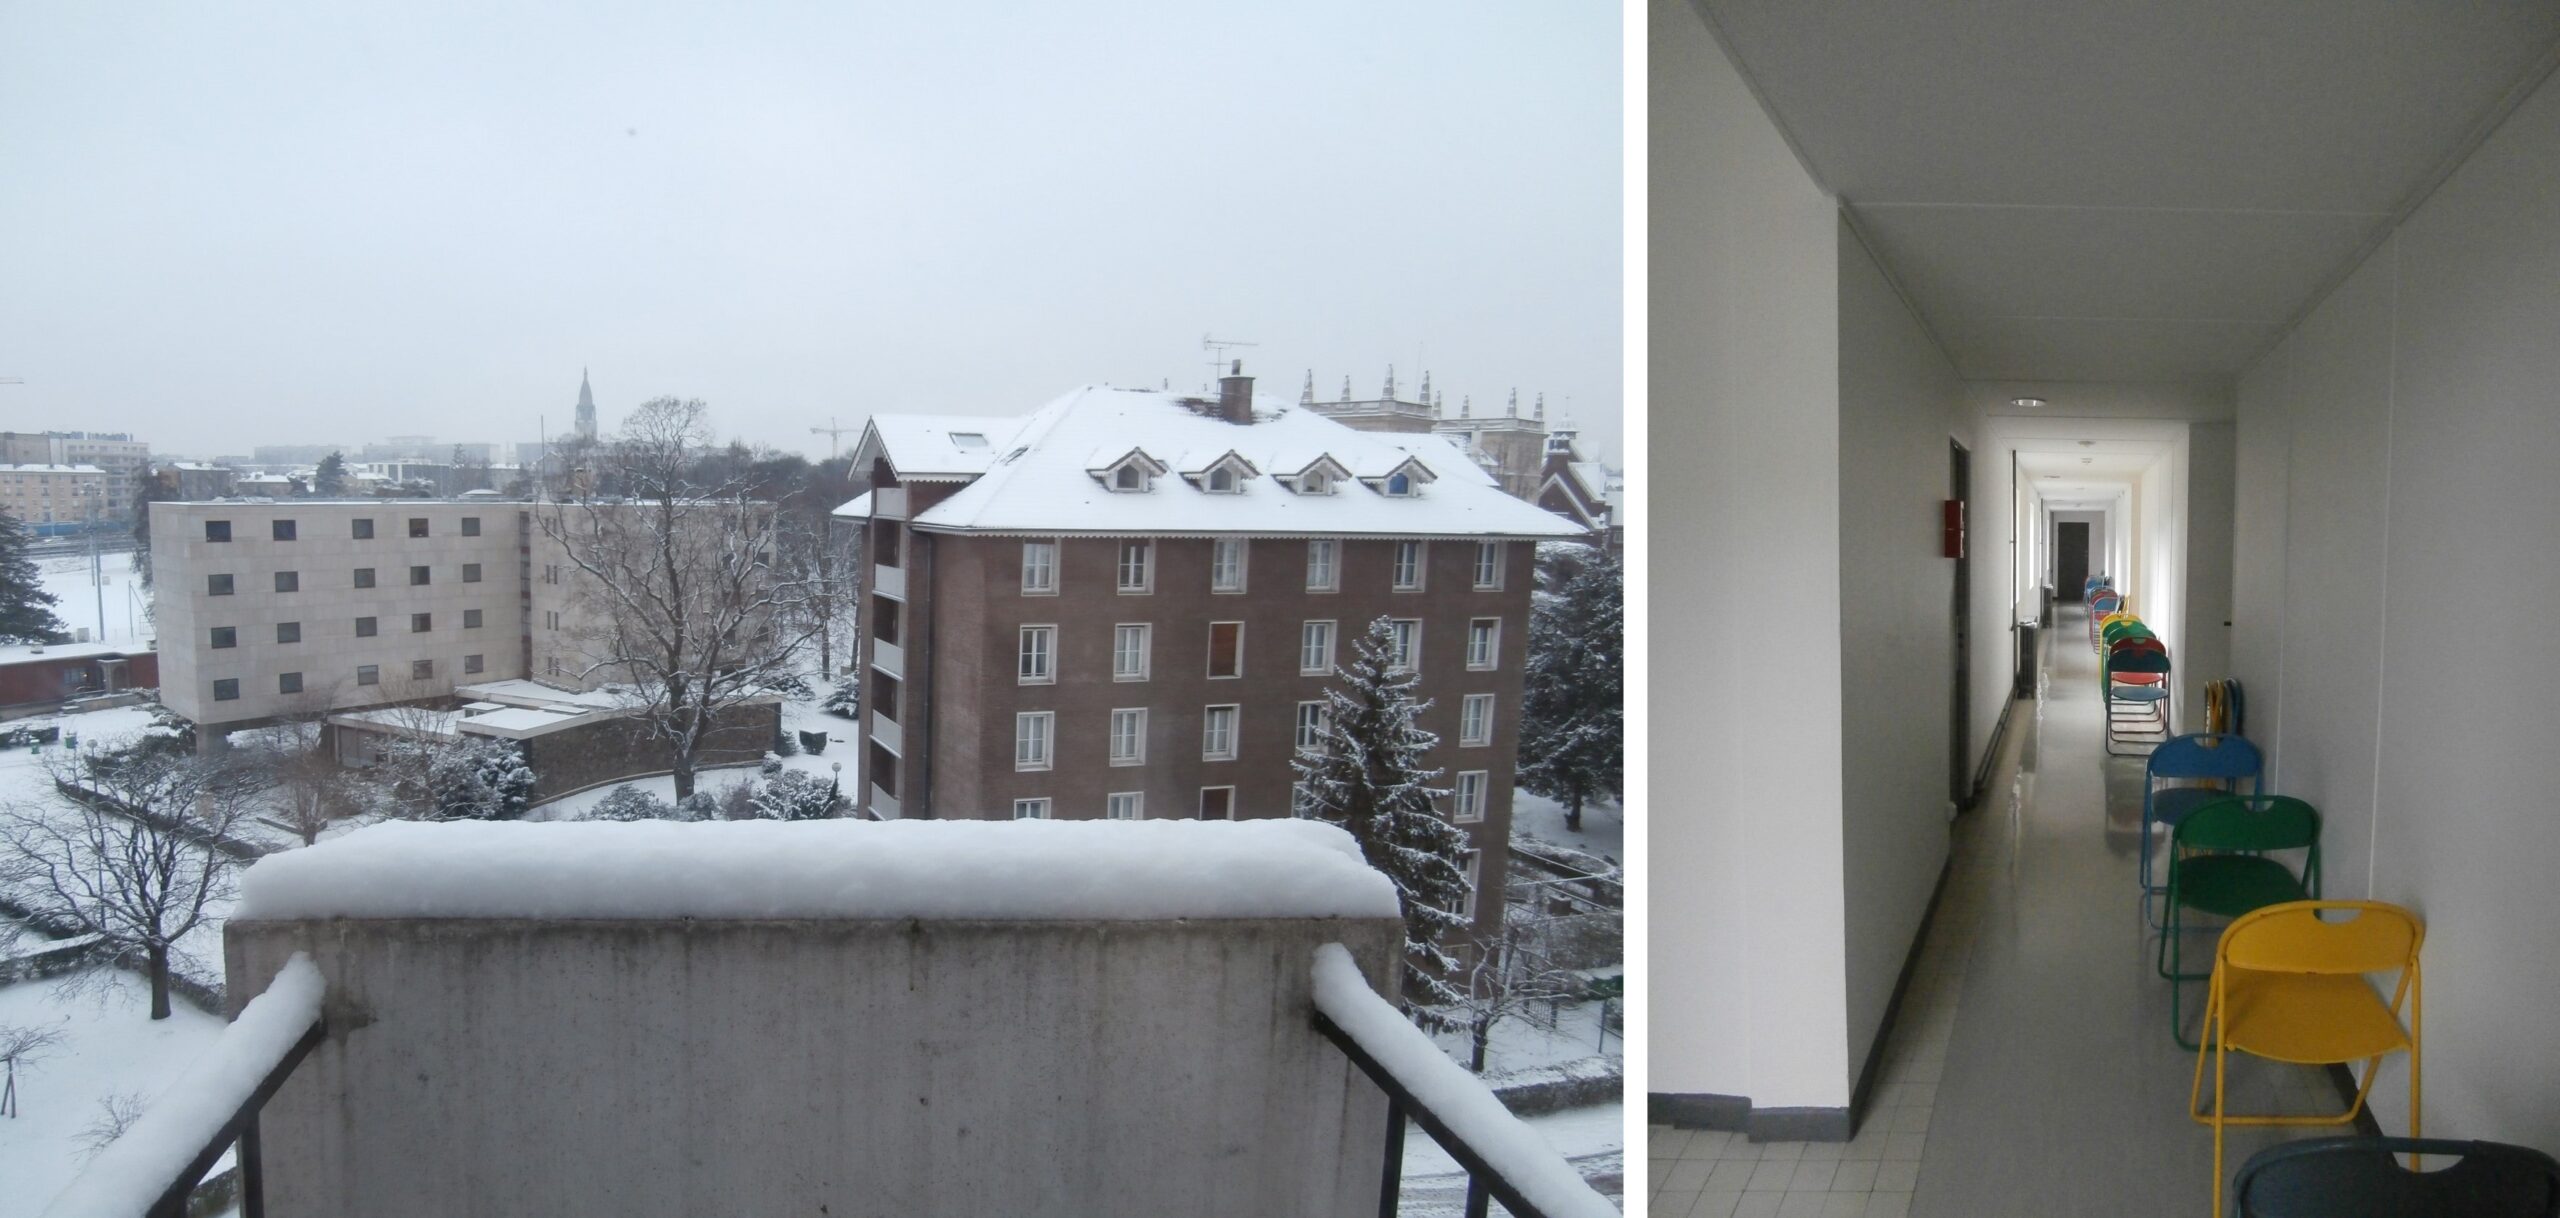 インド館からの眺め(左)とスイス館のインスタレーション(右)